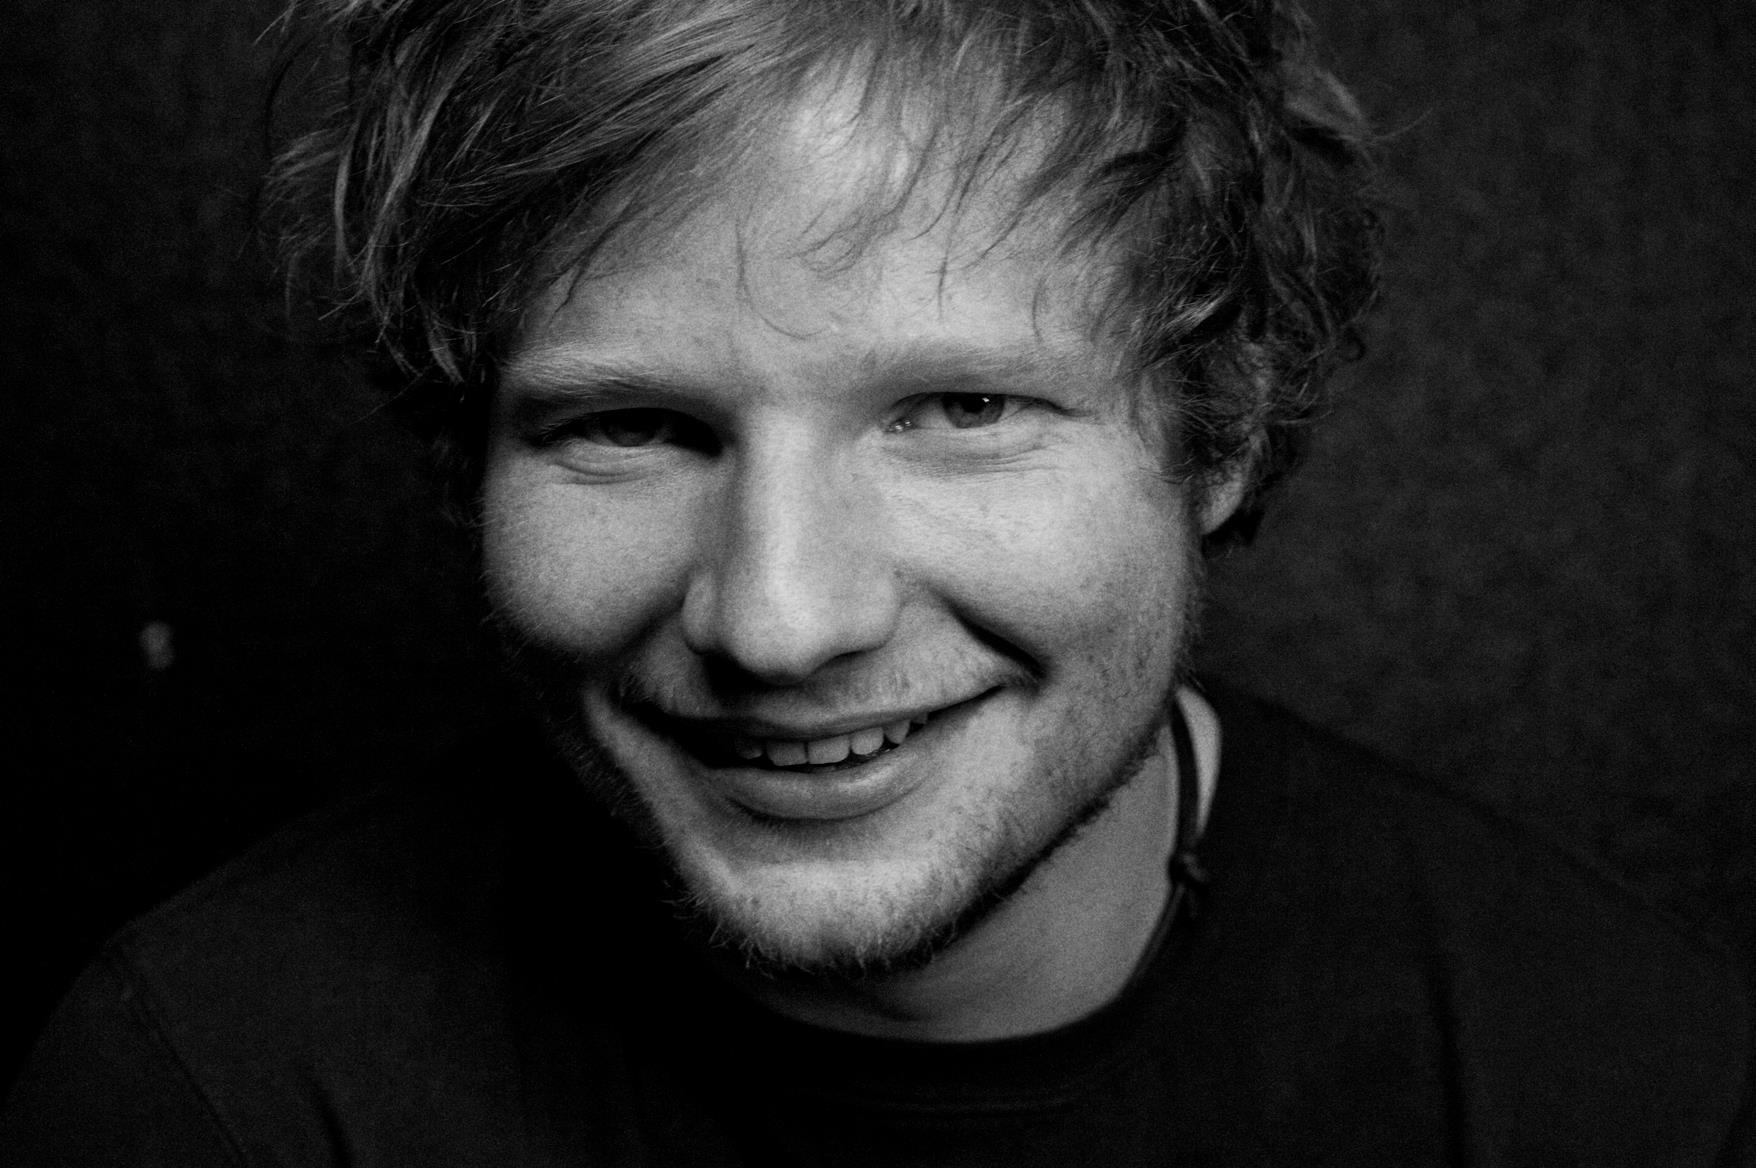 Ed Sheeran Smile Wallpaper HD Mobile Desktop Computer,Gadget